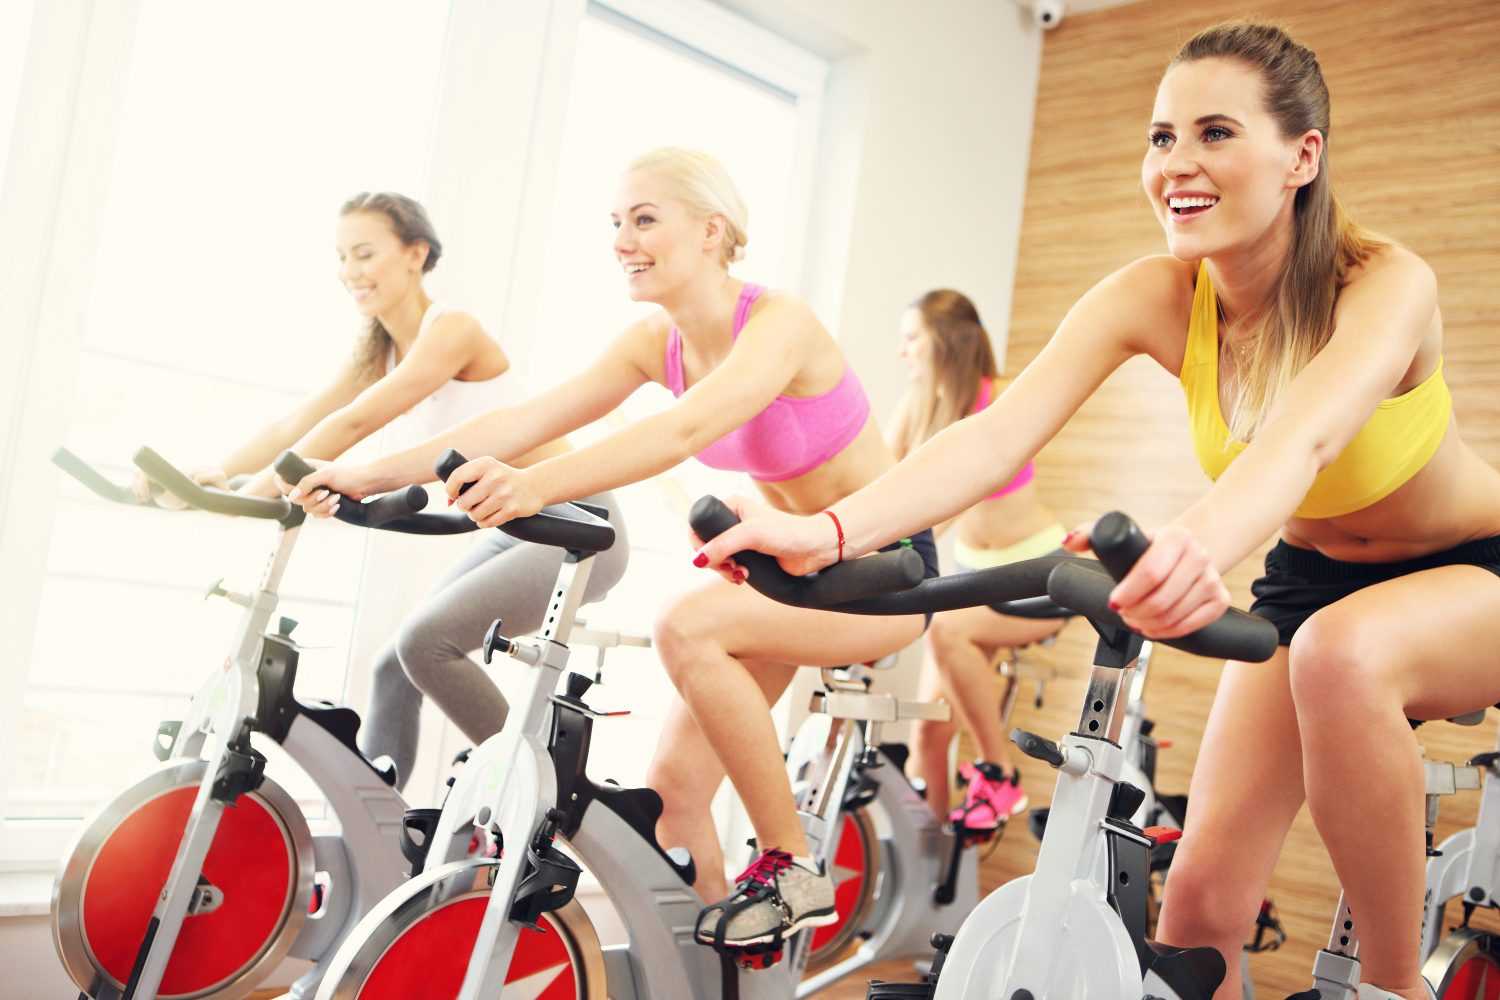 Сайкл-тренировка для похудения - мышцы качаются на велотренажере, польза и противопоказания